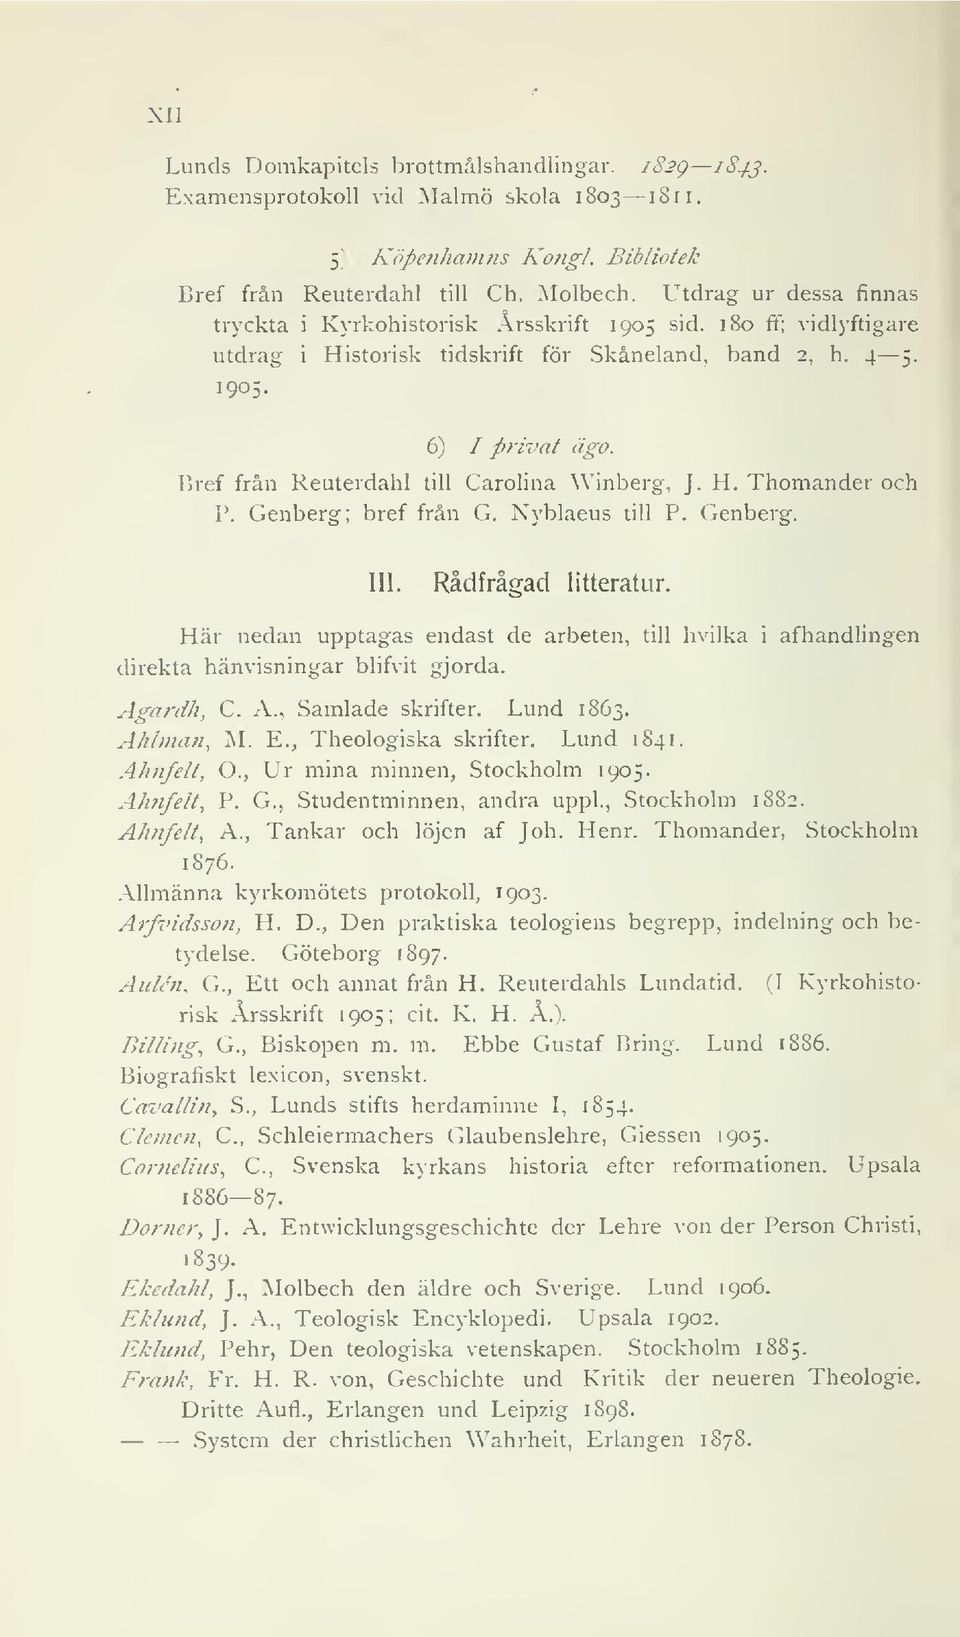 Bref från Reuterdahl till Carolina Winberg, J. H. Thomander och P. Genberg; bref från G. Nyblaeus till P. Genberg. III. Rådfrågad litteratur.